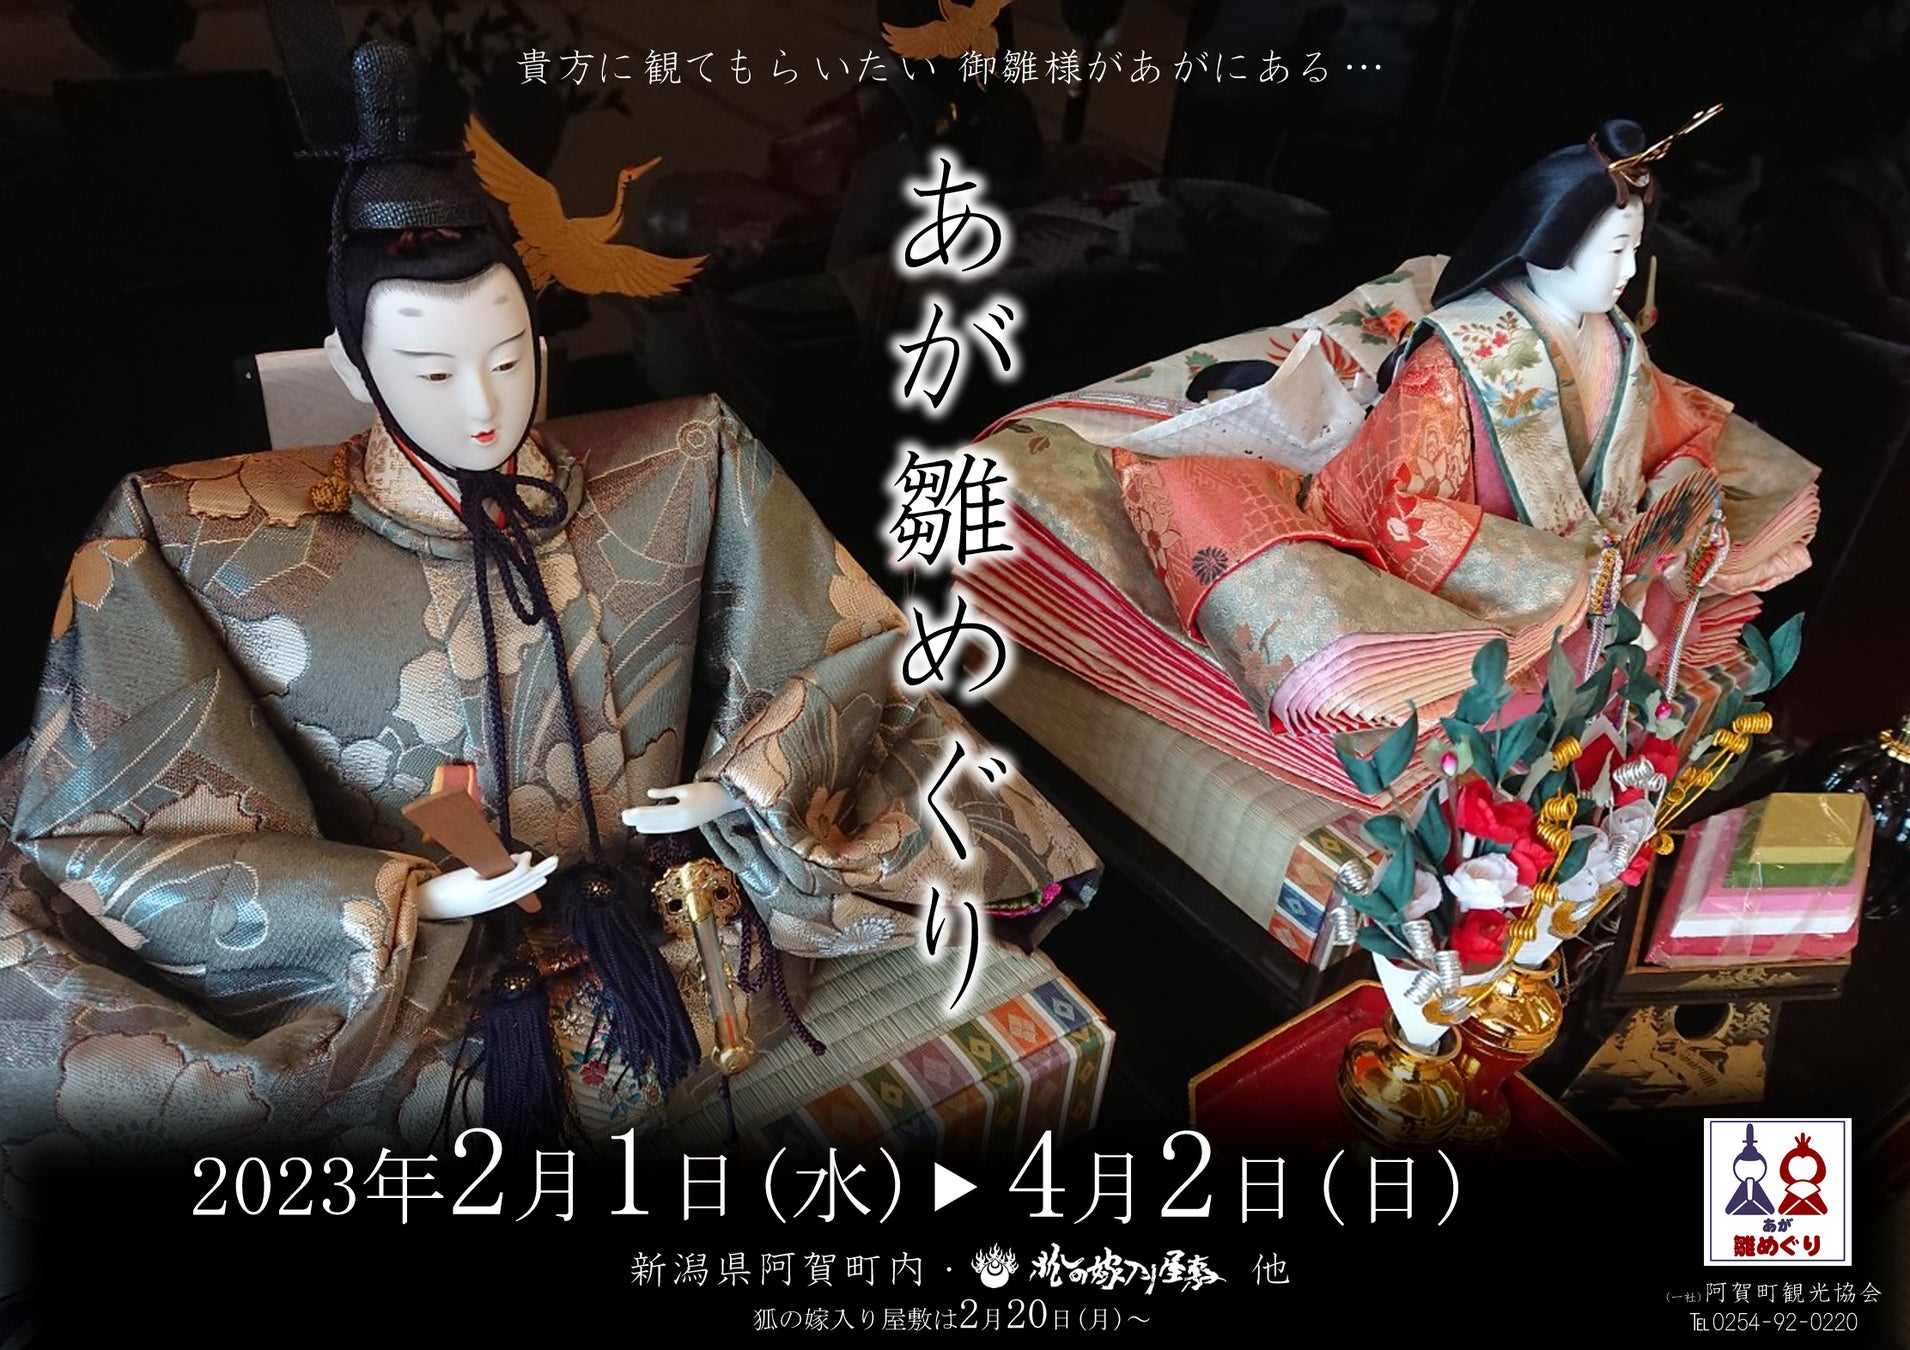 新潟県阿賀町の城下町に眠るお雛様を展示「あが雛めぐり」